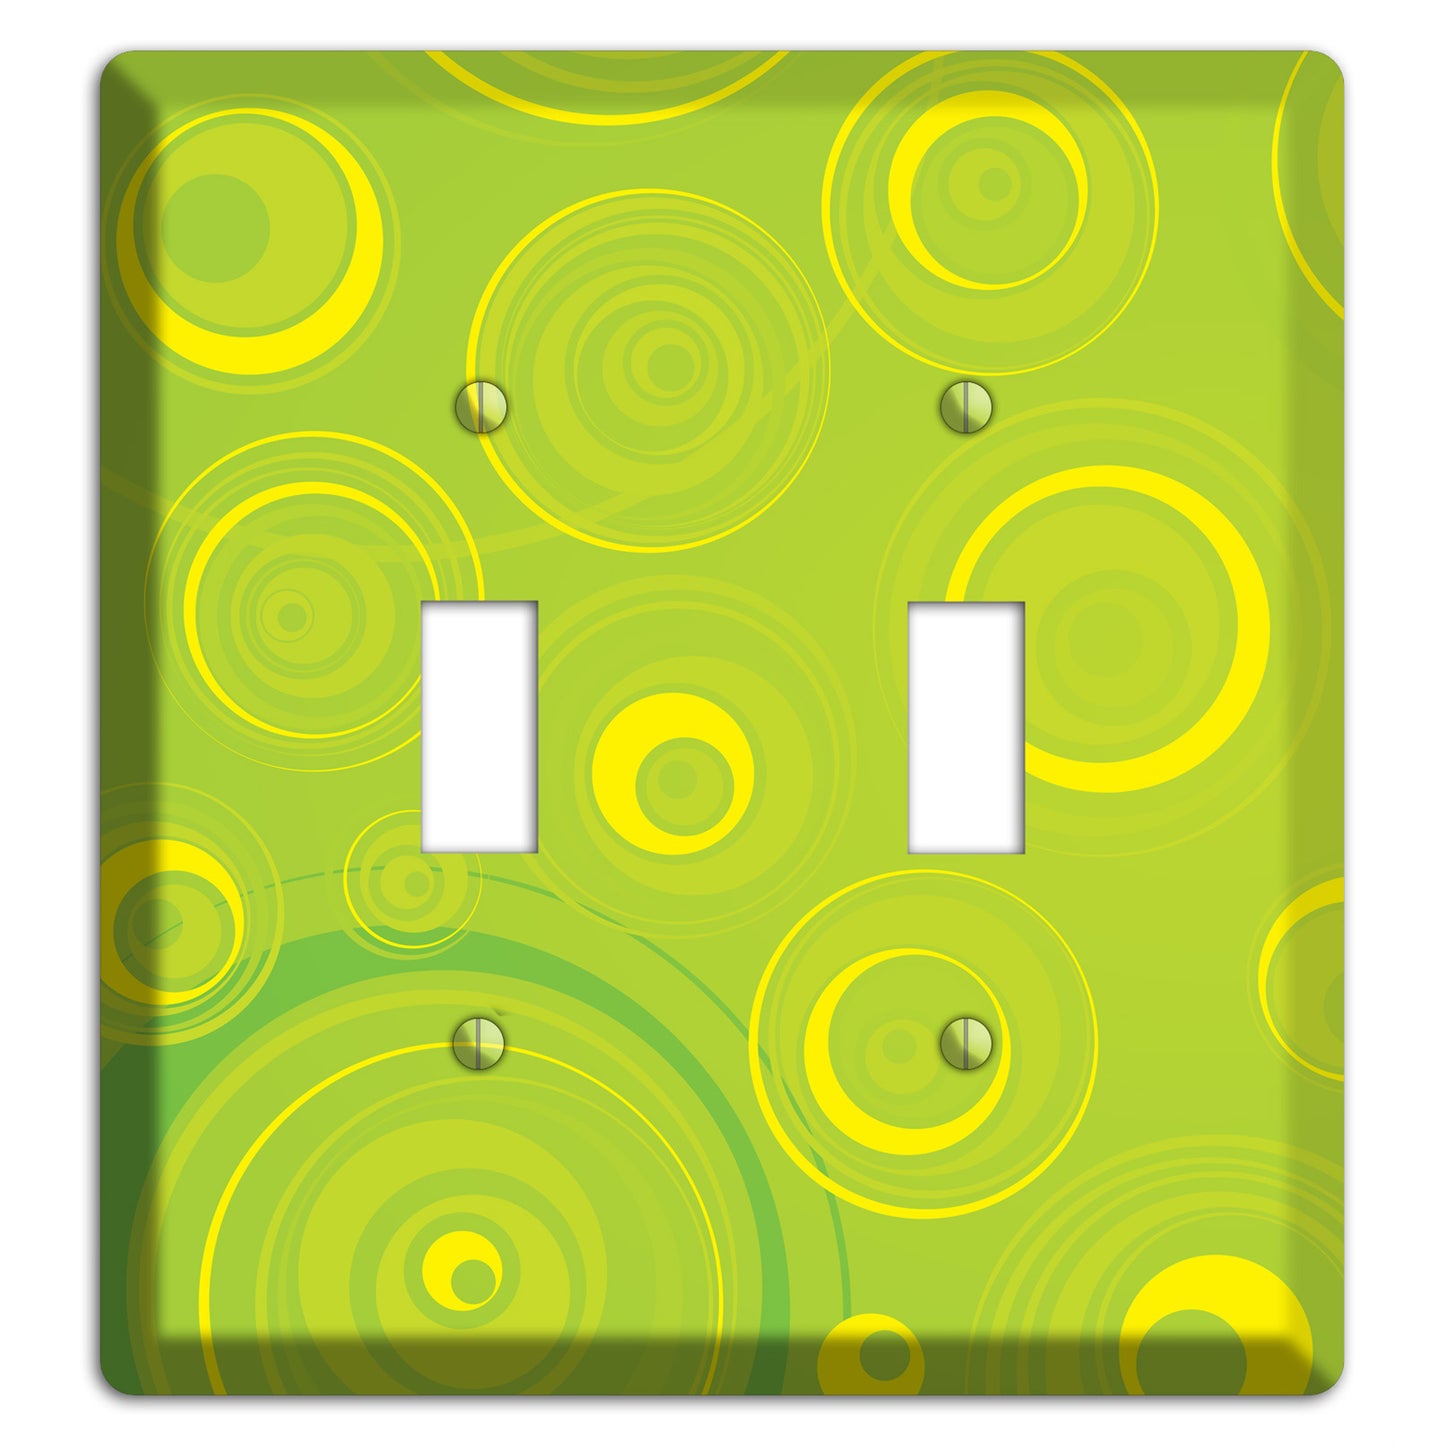 Green-yellow Circles 2 Toggle Wallplate